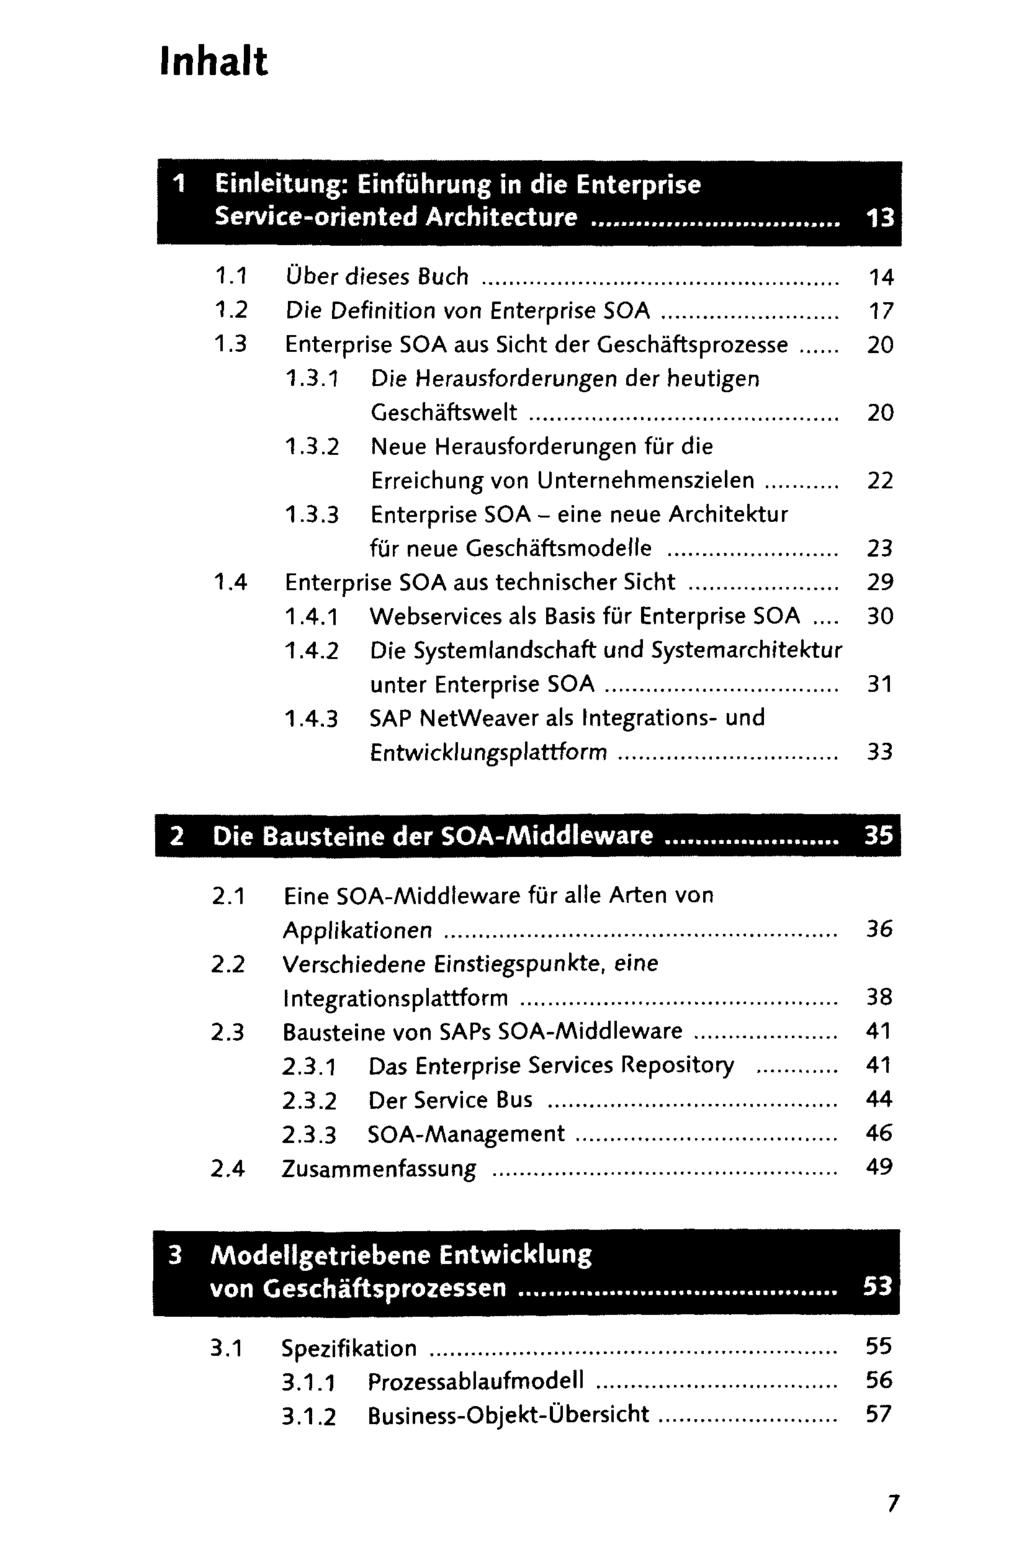 Inhalt 1 Einleitung: Einfuhrung in die Enterprise Service-oriented Architecture 1.1 Uber dieses Buch 14 1.2 Die Definition von Enterprise SOA 17 1.